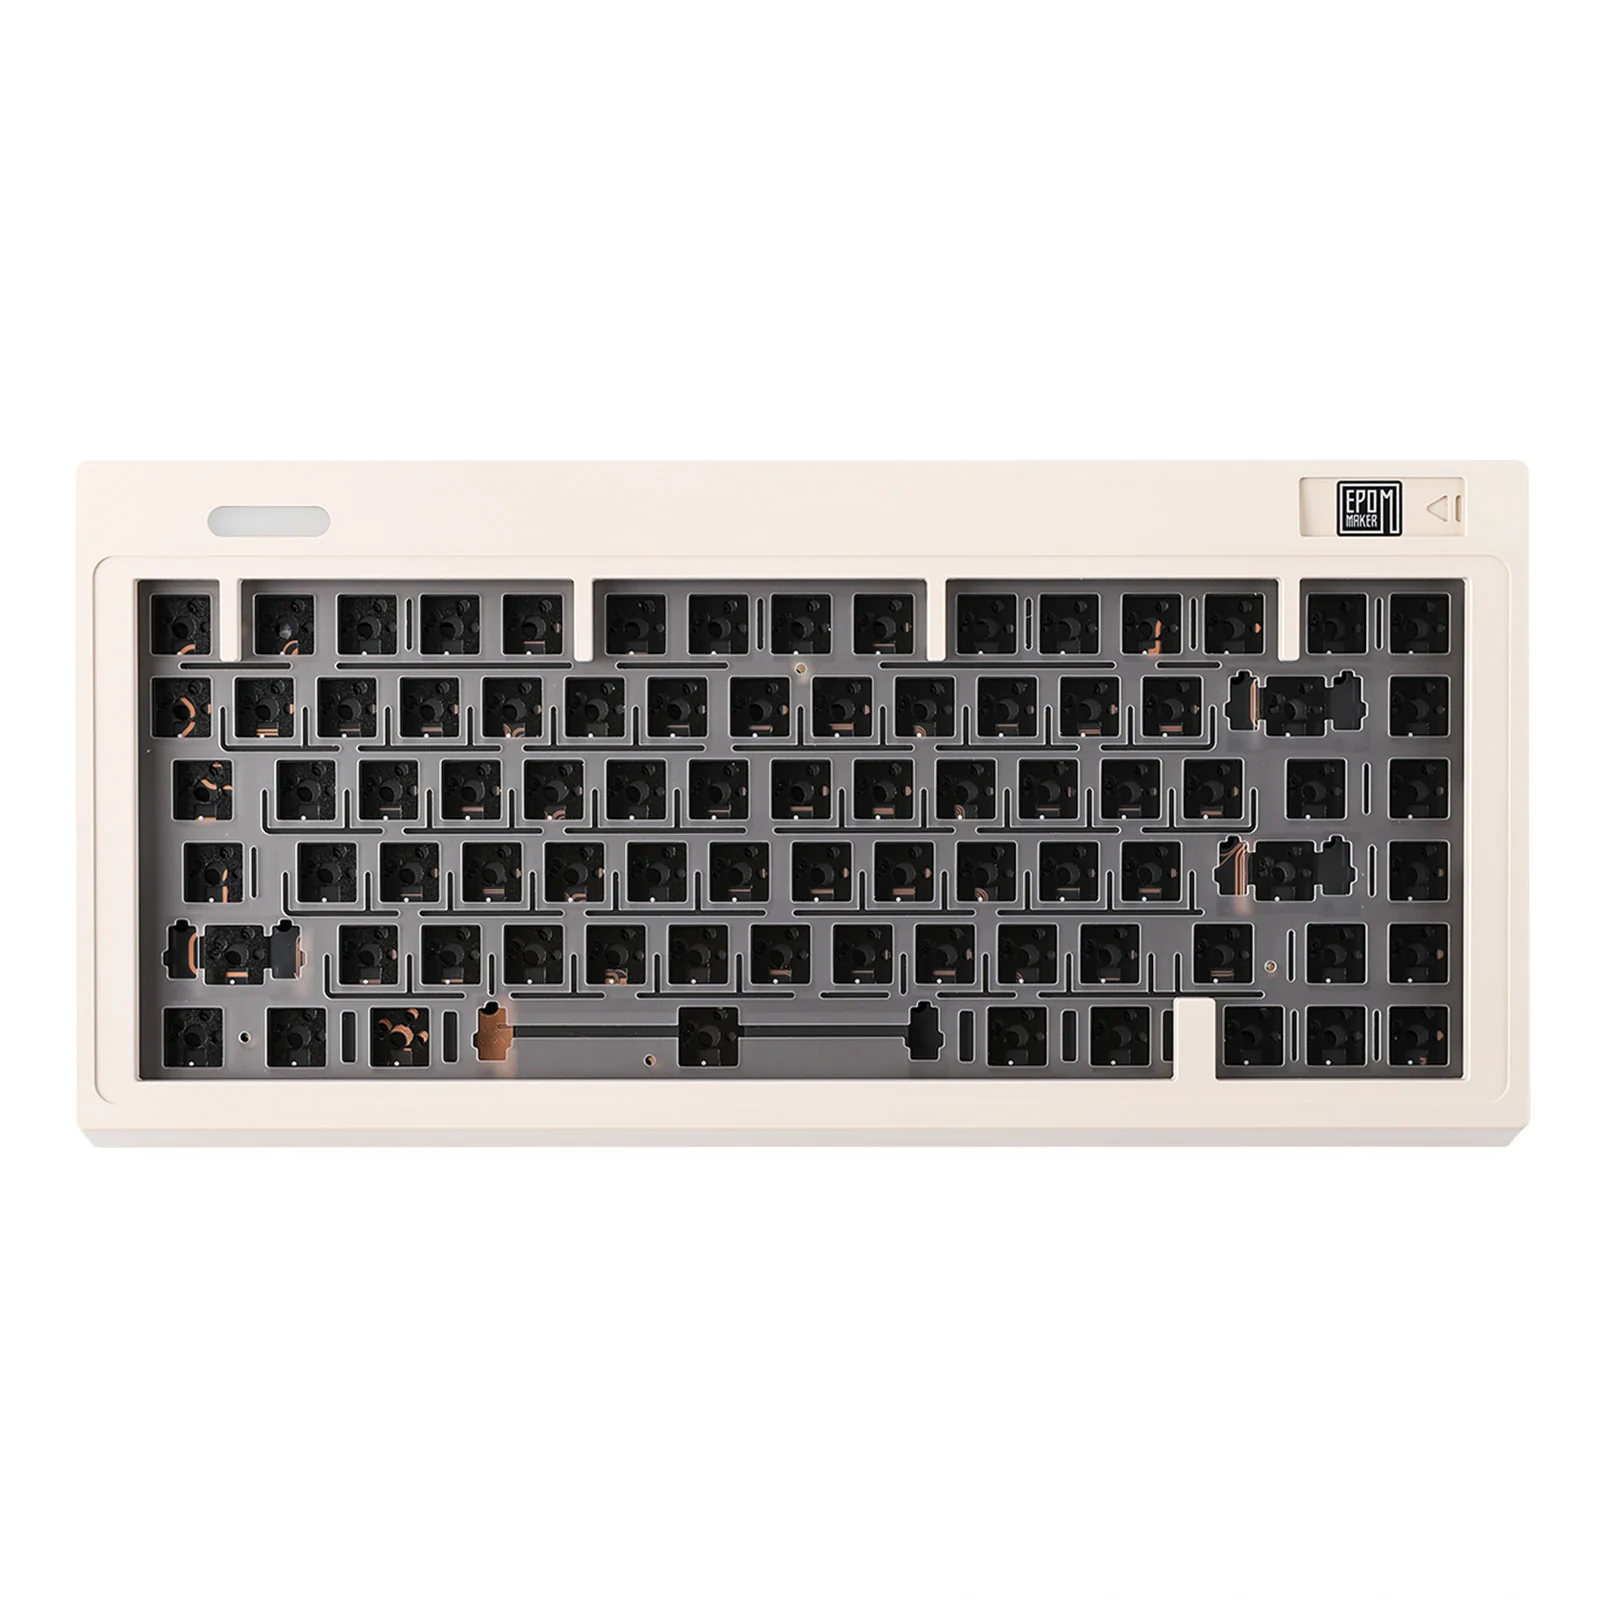 Epomaker ek75 via mechanical keyboard kit